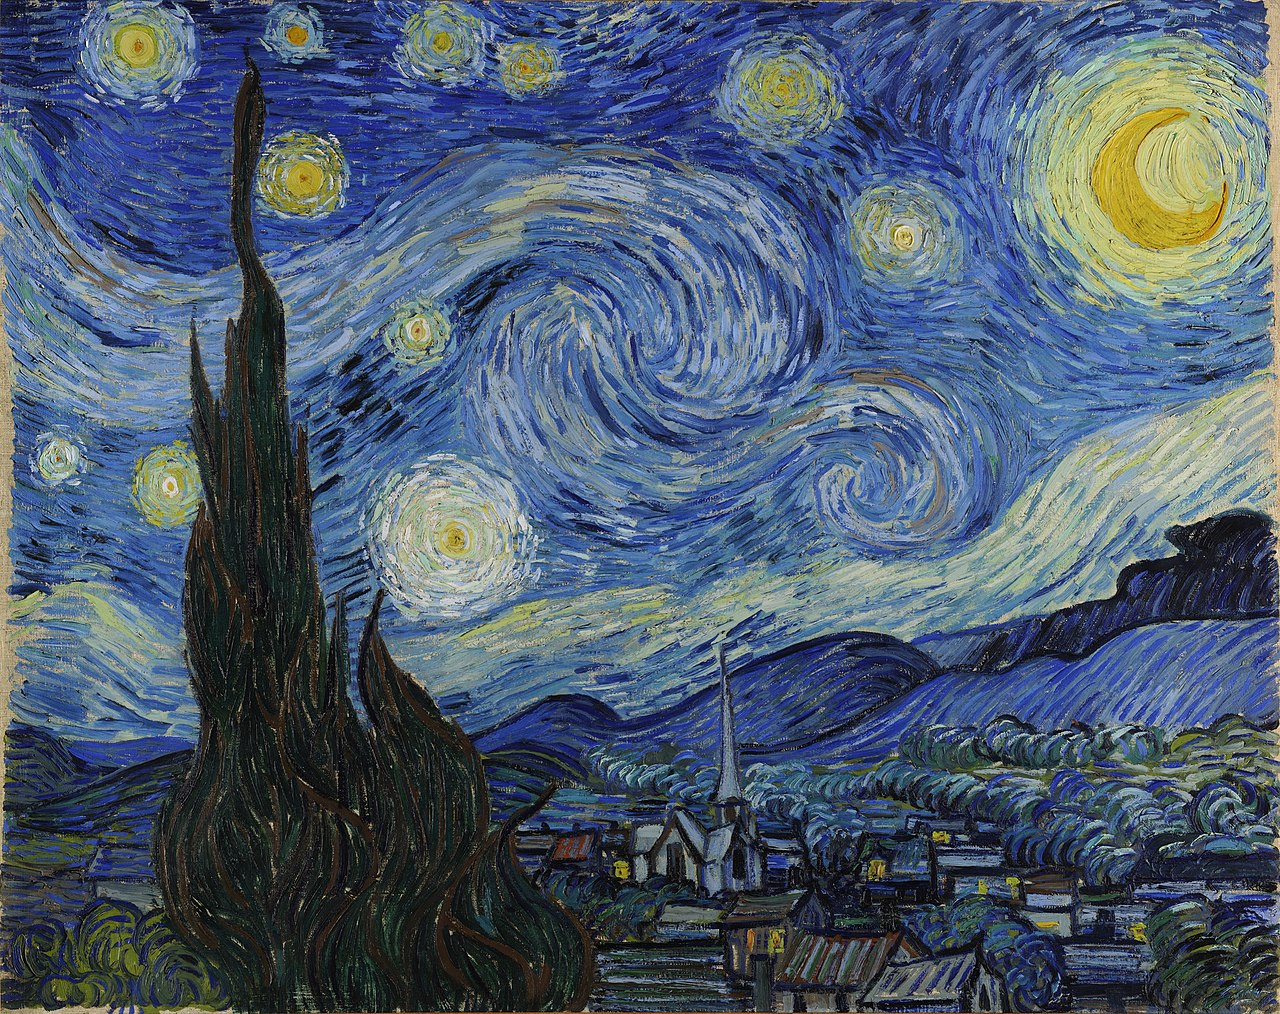 Звездная ночь by Винсе́нт Виллем Ван Гог - 1889 - 73 x 92 см 